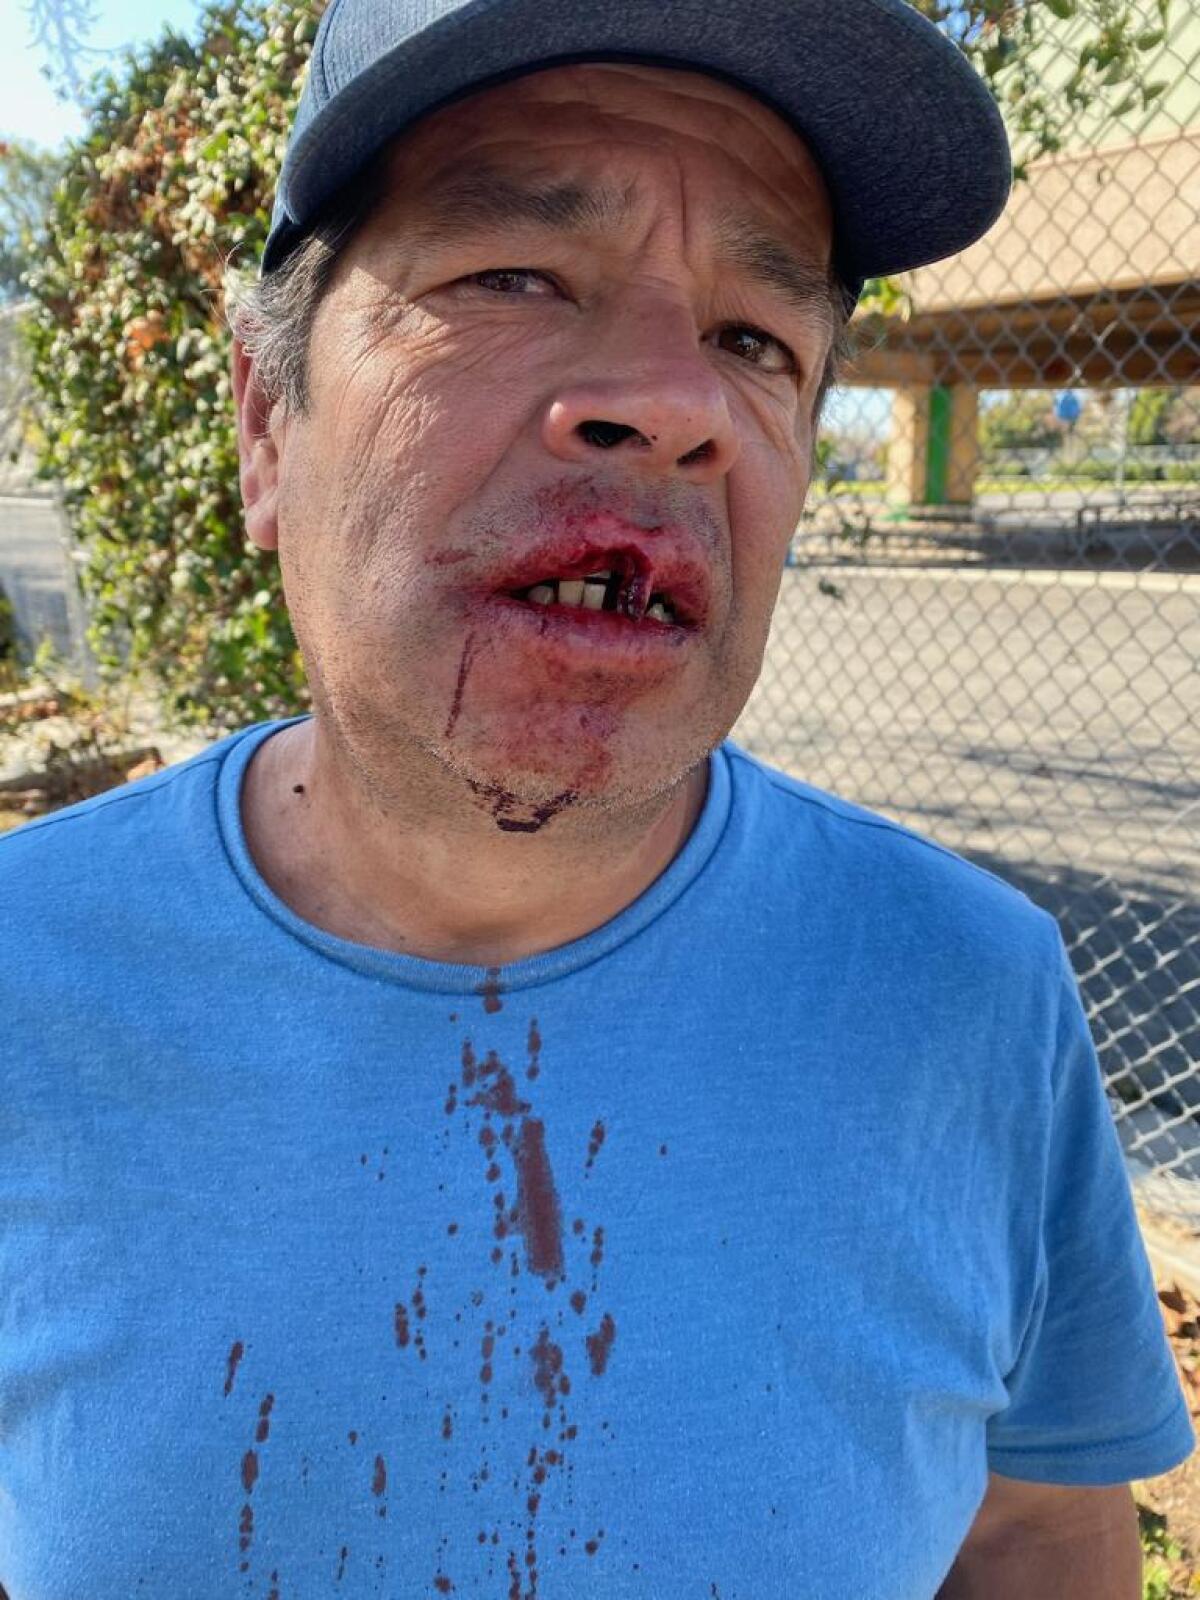 El costarricense Minor Bravo fue atacado por un hombre asiático en el vecindario Mid-City,